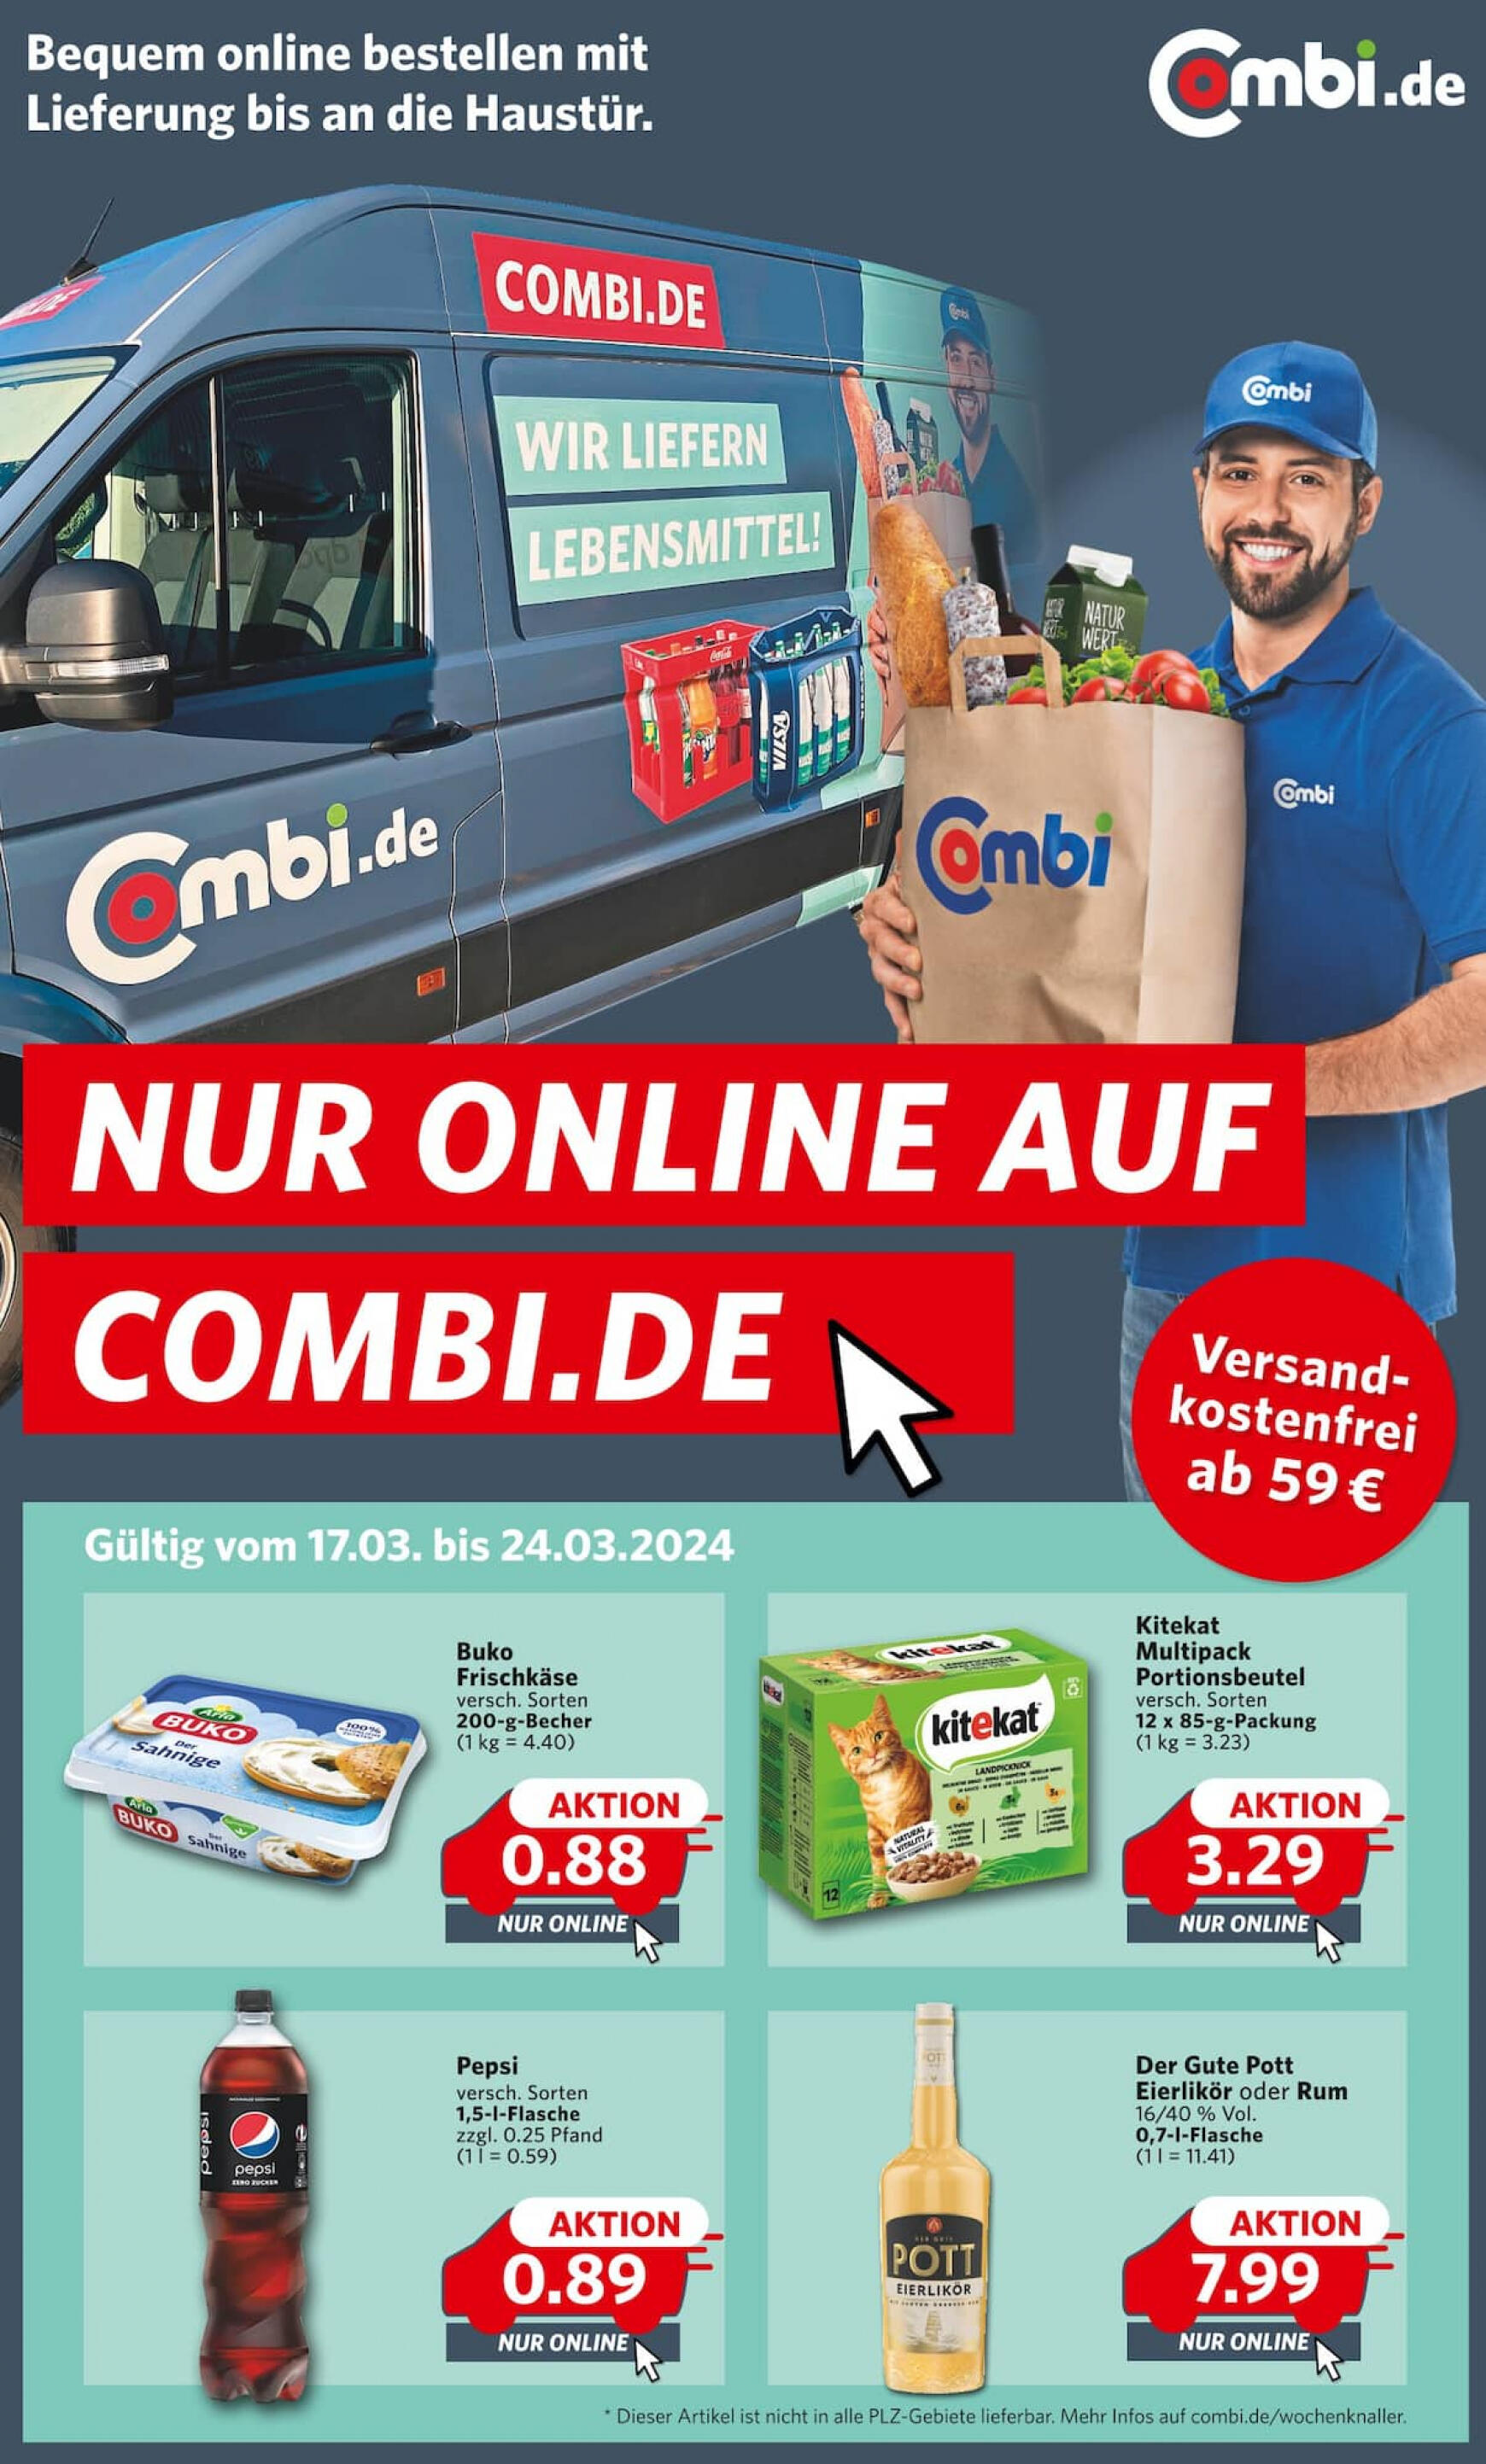 combi - Combi - Nur online auf combi.de gültig ab 17.03.2024 - page: 1